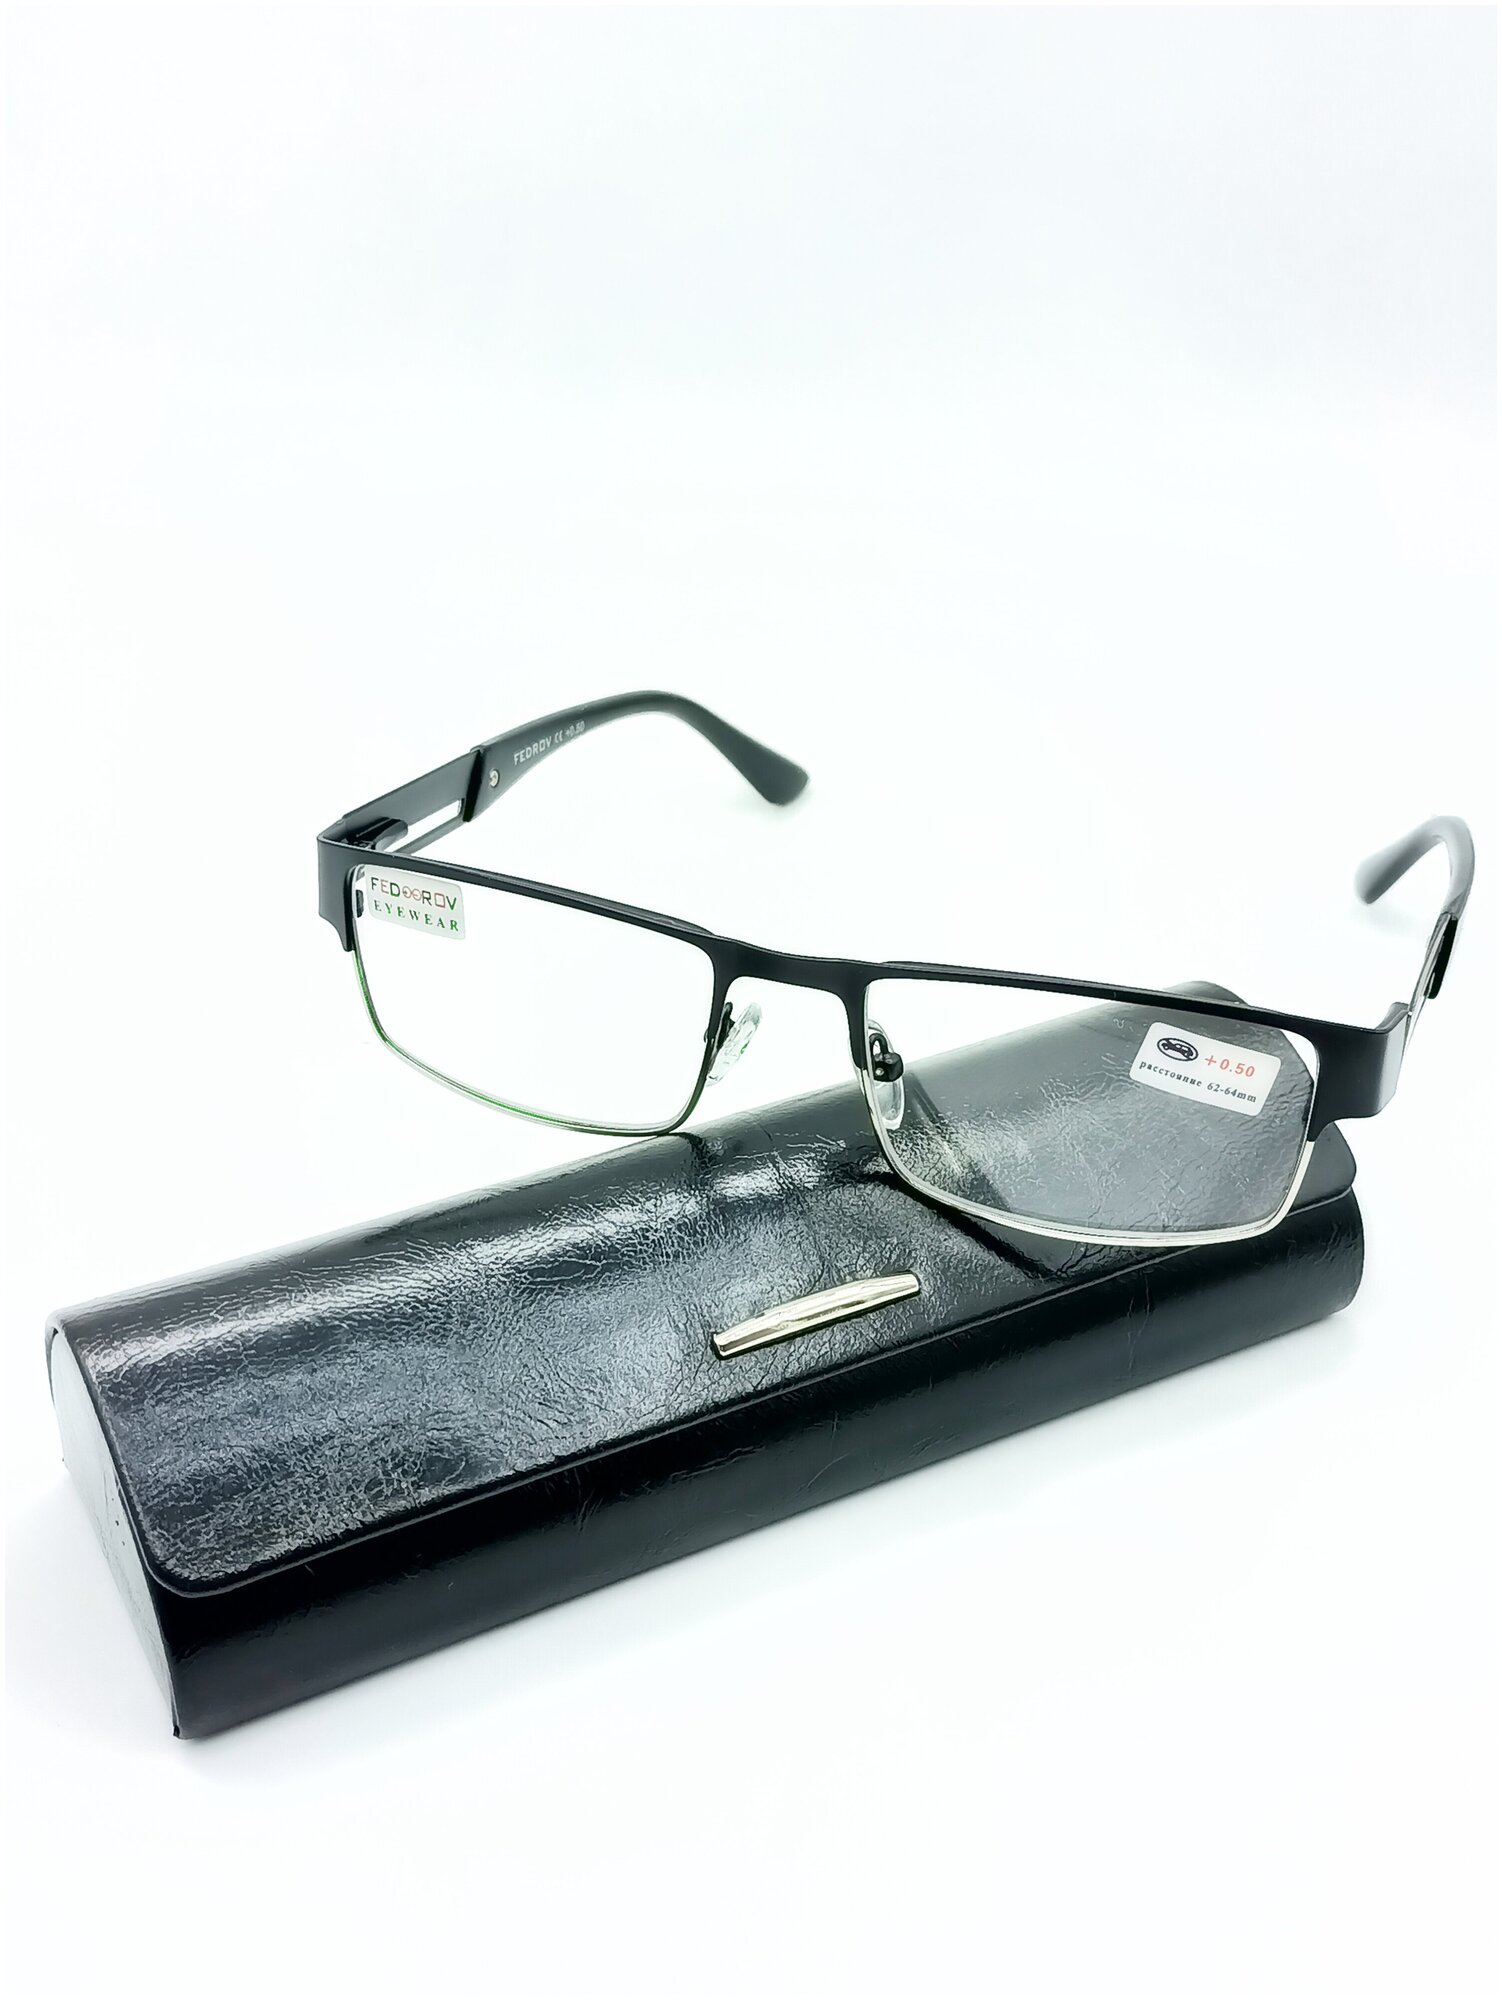 Готовые очки от зрения Fedrov ободковые цвет оправы черный - 3.50 с футляром